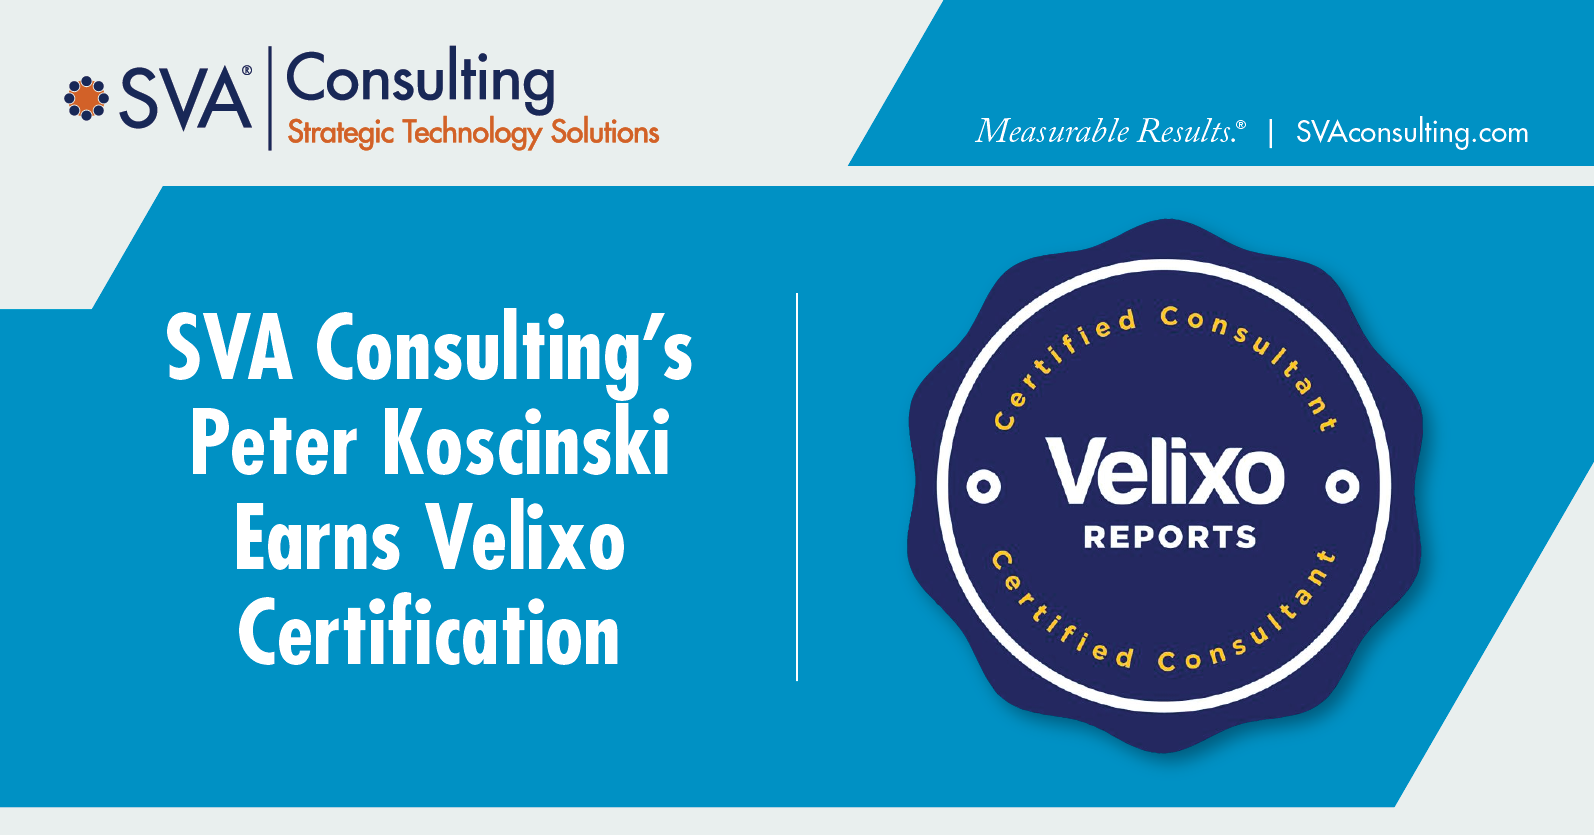 sva-consultings-peter-koscinski-earns-velixo-certification